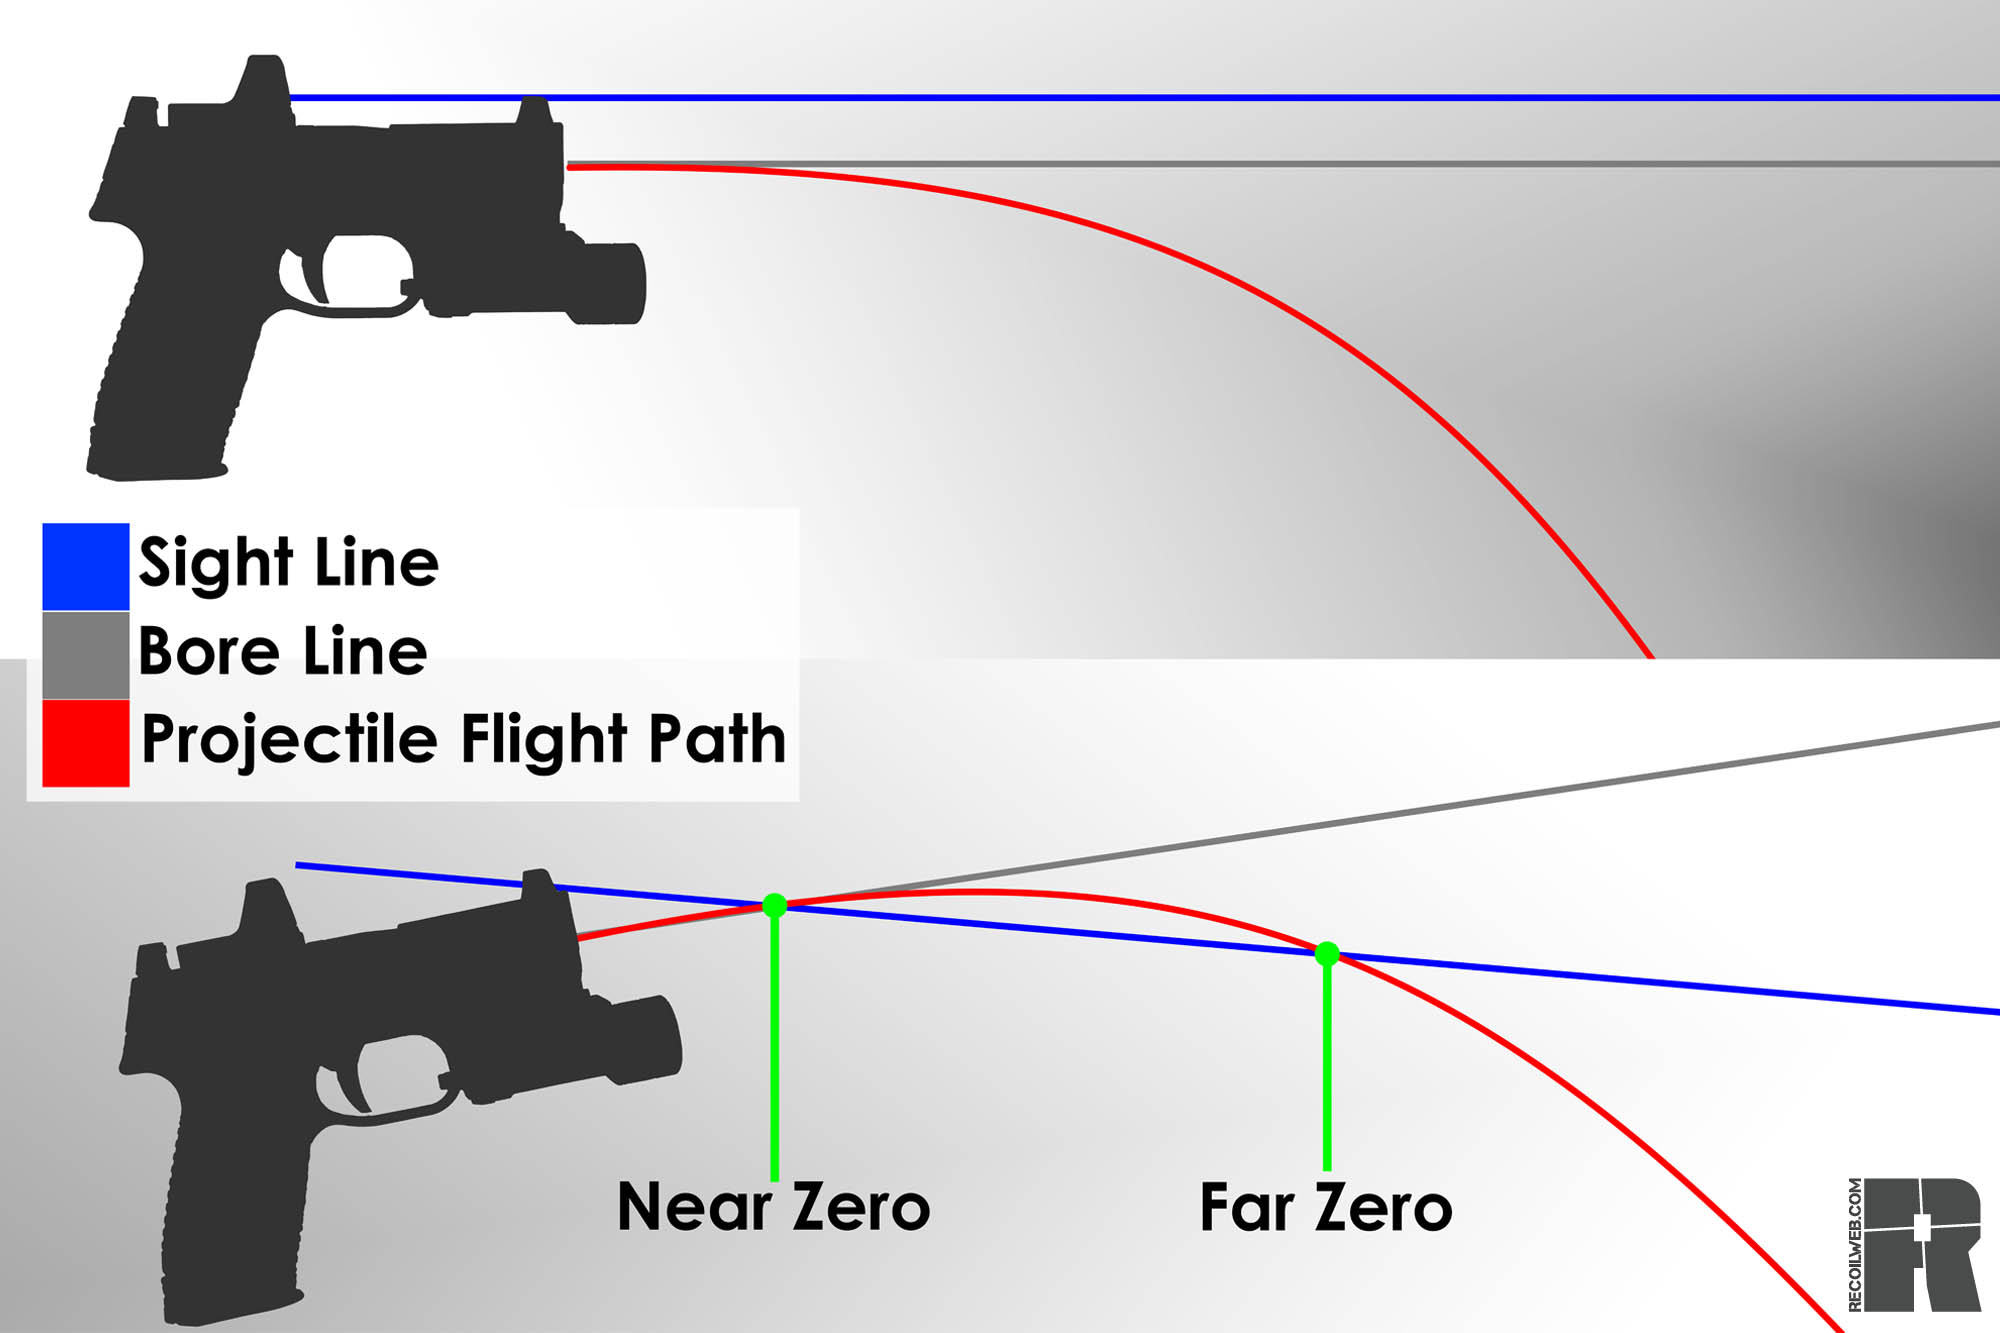 Zeroing a pistol diagram, sight line vs bore line vs fight path